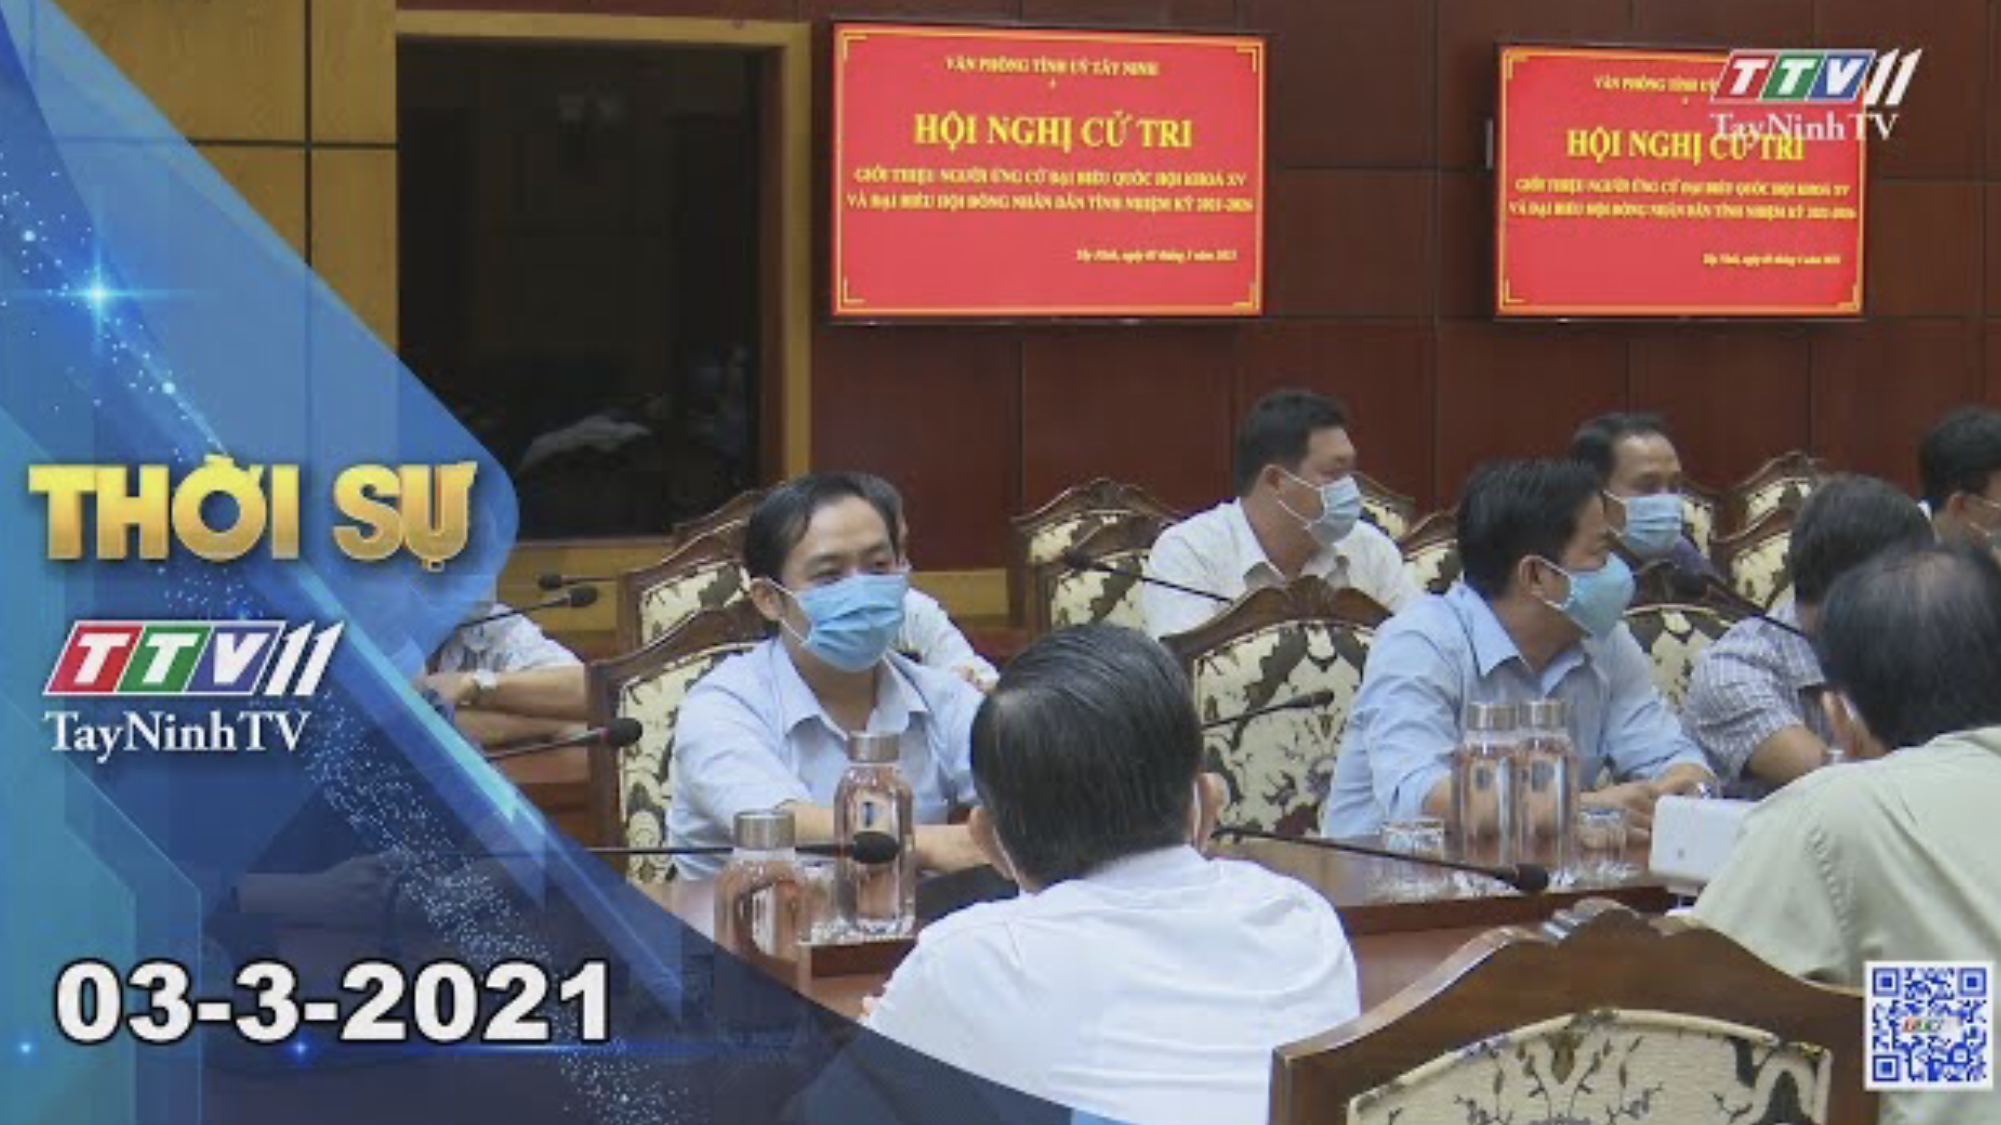 Thời sự Tây Ninh 03-3-2021 | Tin tức hôm nay | TayNinhTV